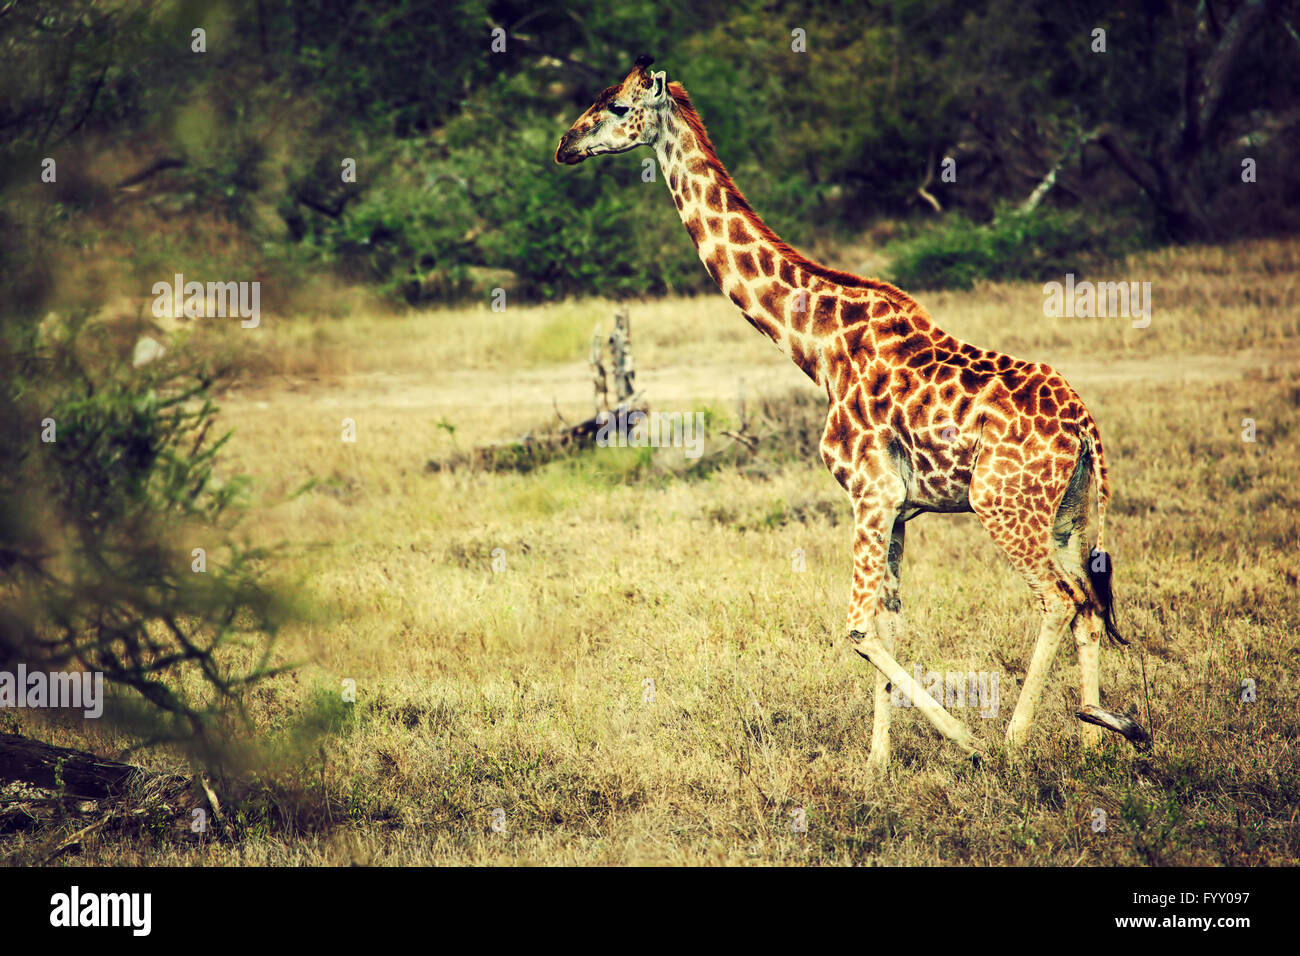 Giraffe on African savanna Stock Photo